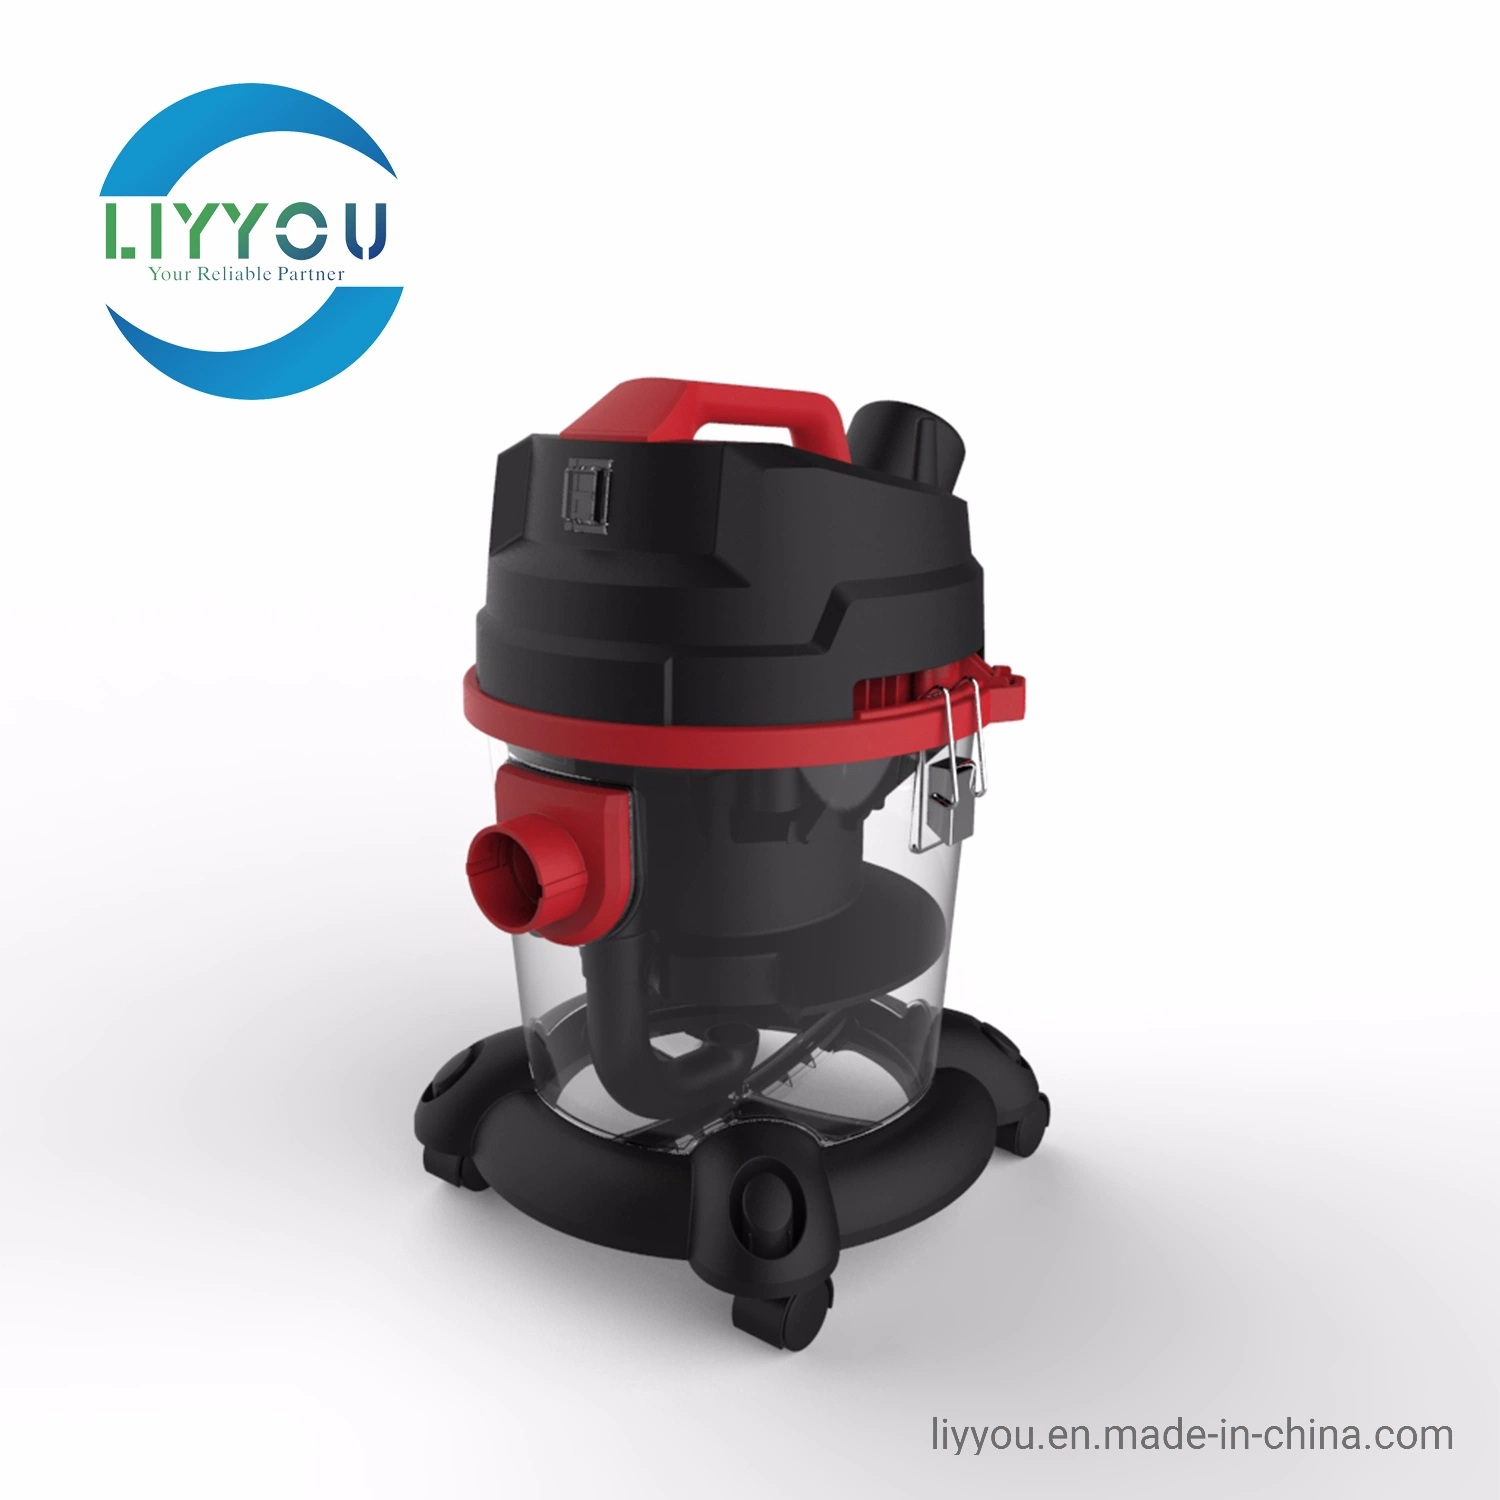 Aspirateur à filtre Aqua Ly632 avec design moderne et aspirateur à filtre à eau Rainbow